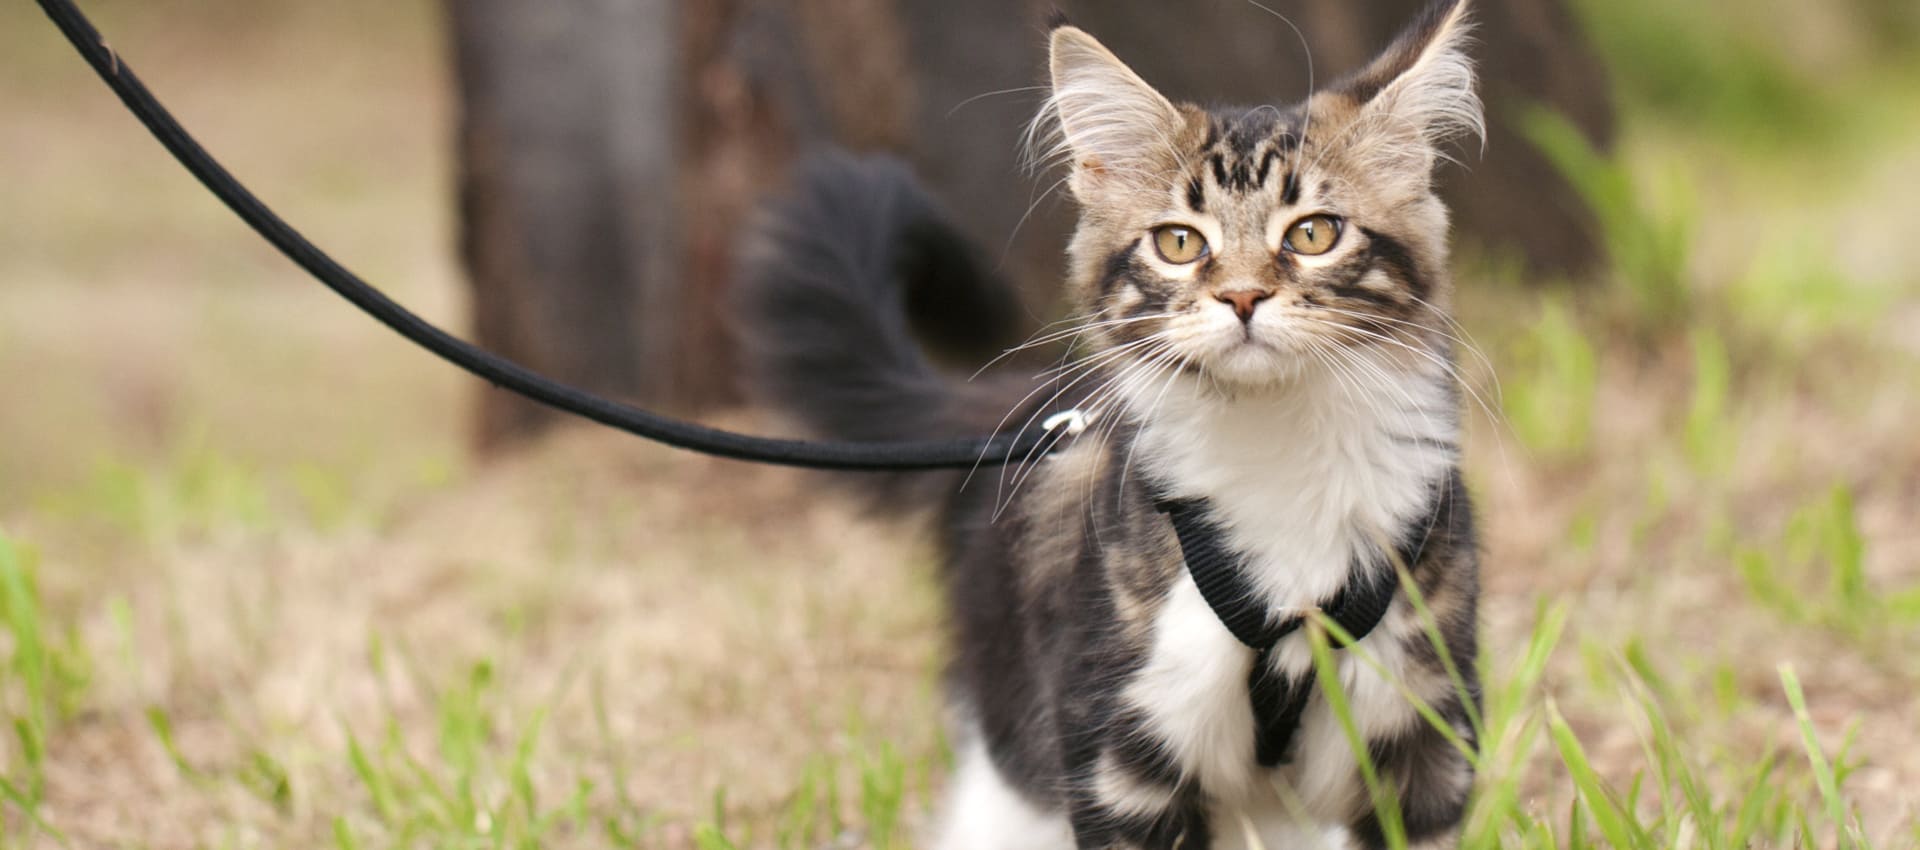 Какой должна быть правильная шлейка для кошки, прогулки без забот